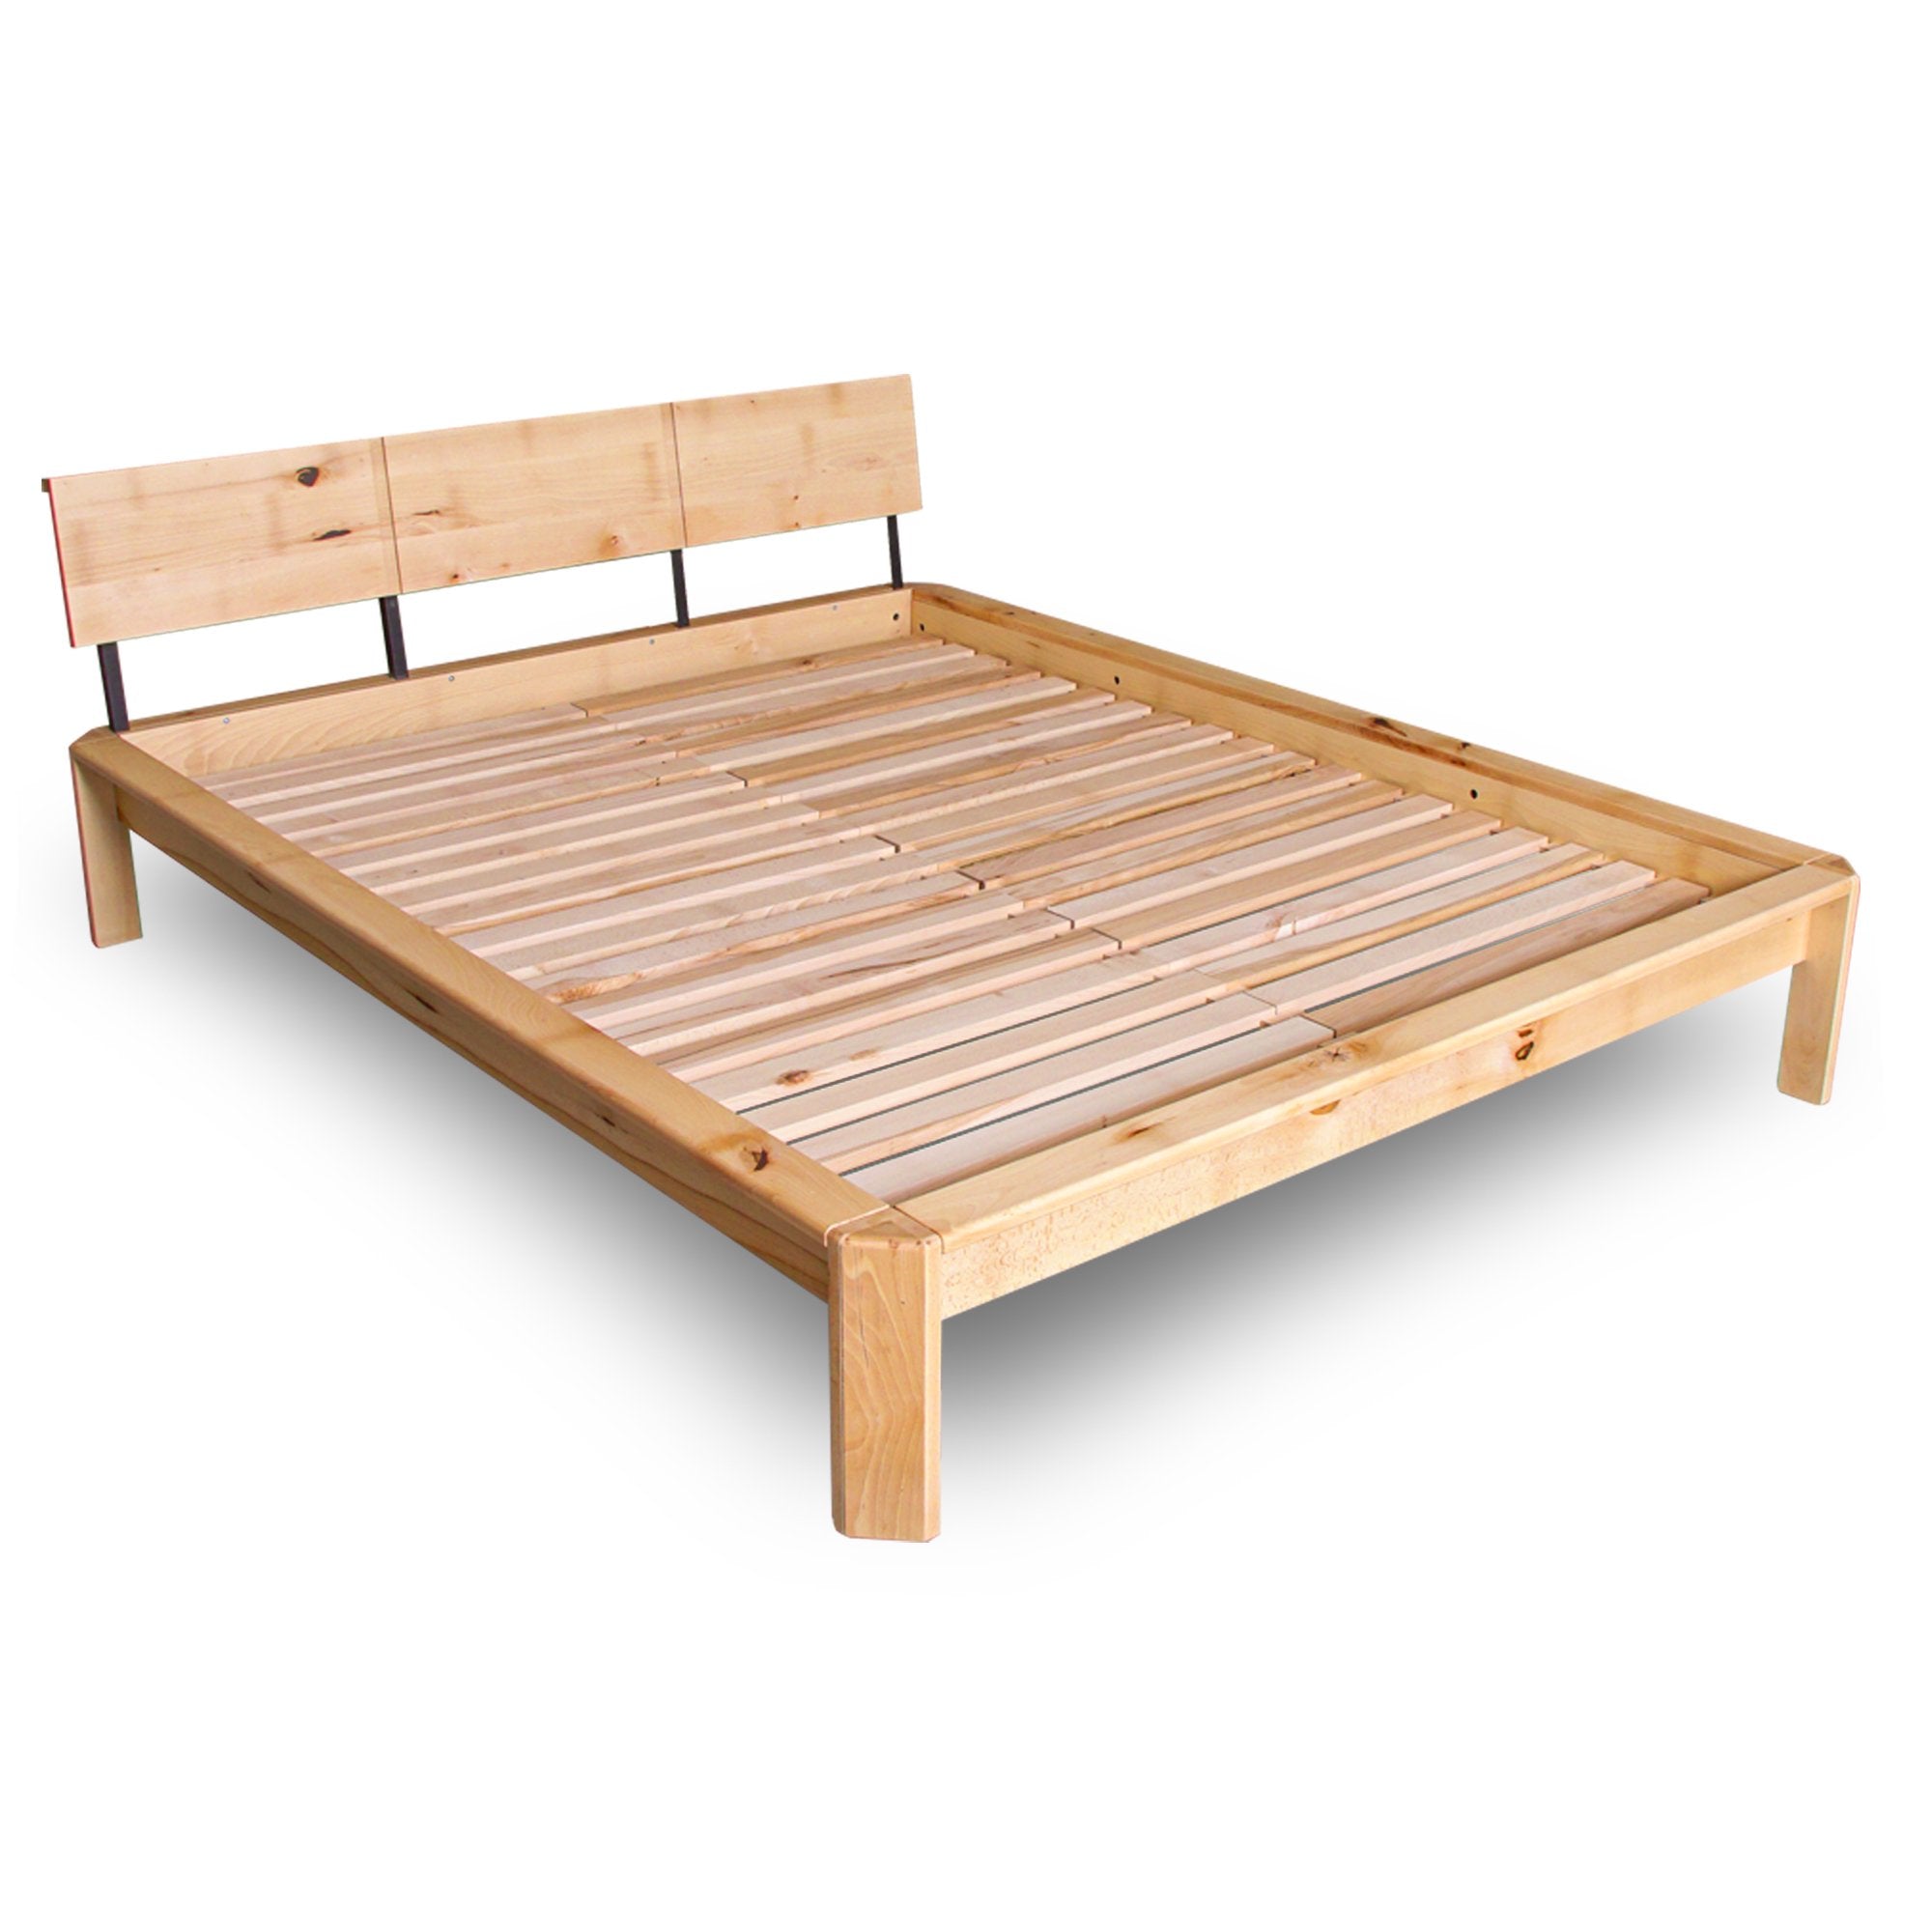 Двоспальне ліжко LOFT, деревина бука з сучками